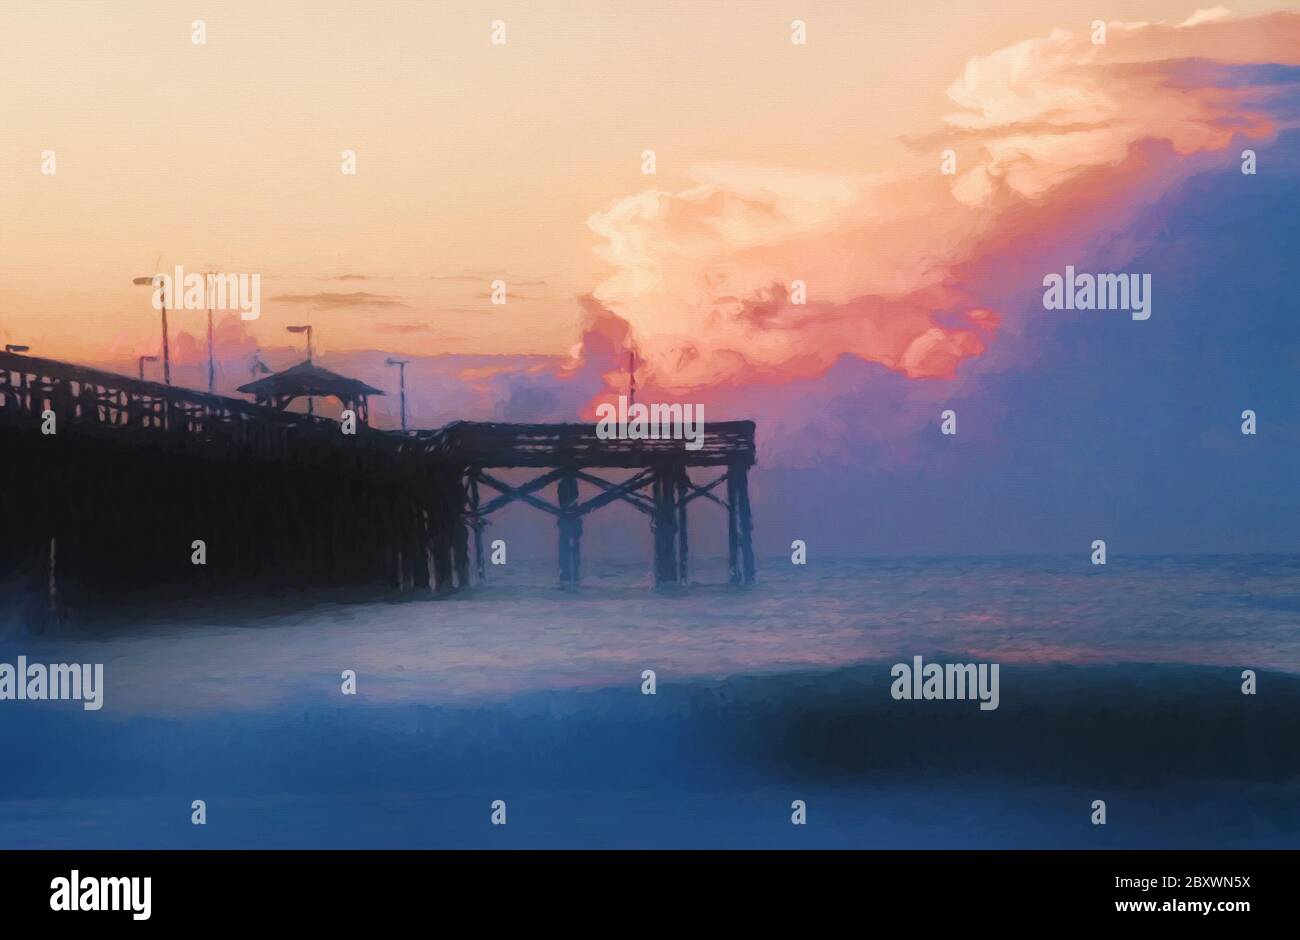 Arte digitale di un'alba con nuvole nel cielo in un molo a Myrtle Beach South Carolina. Foto Stock